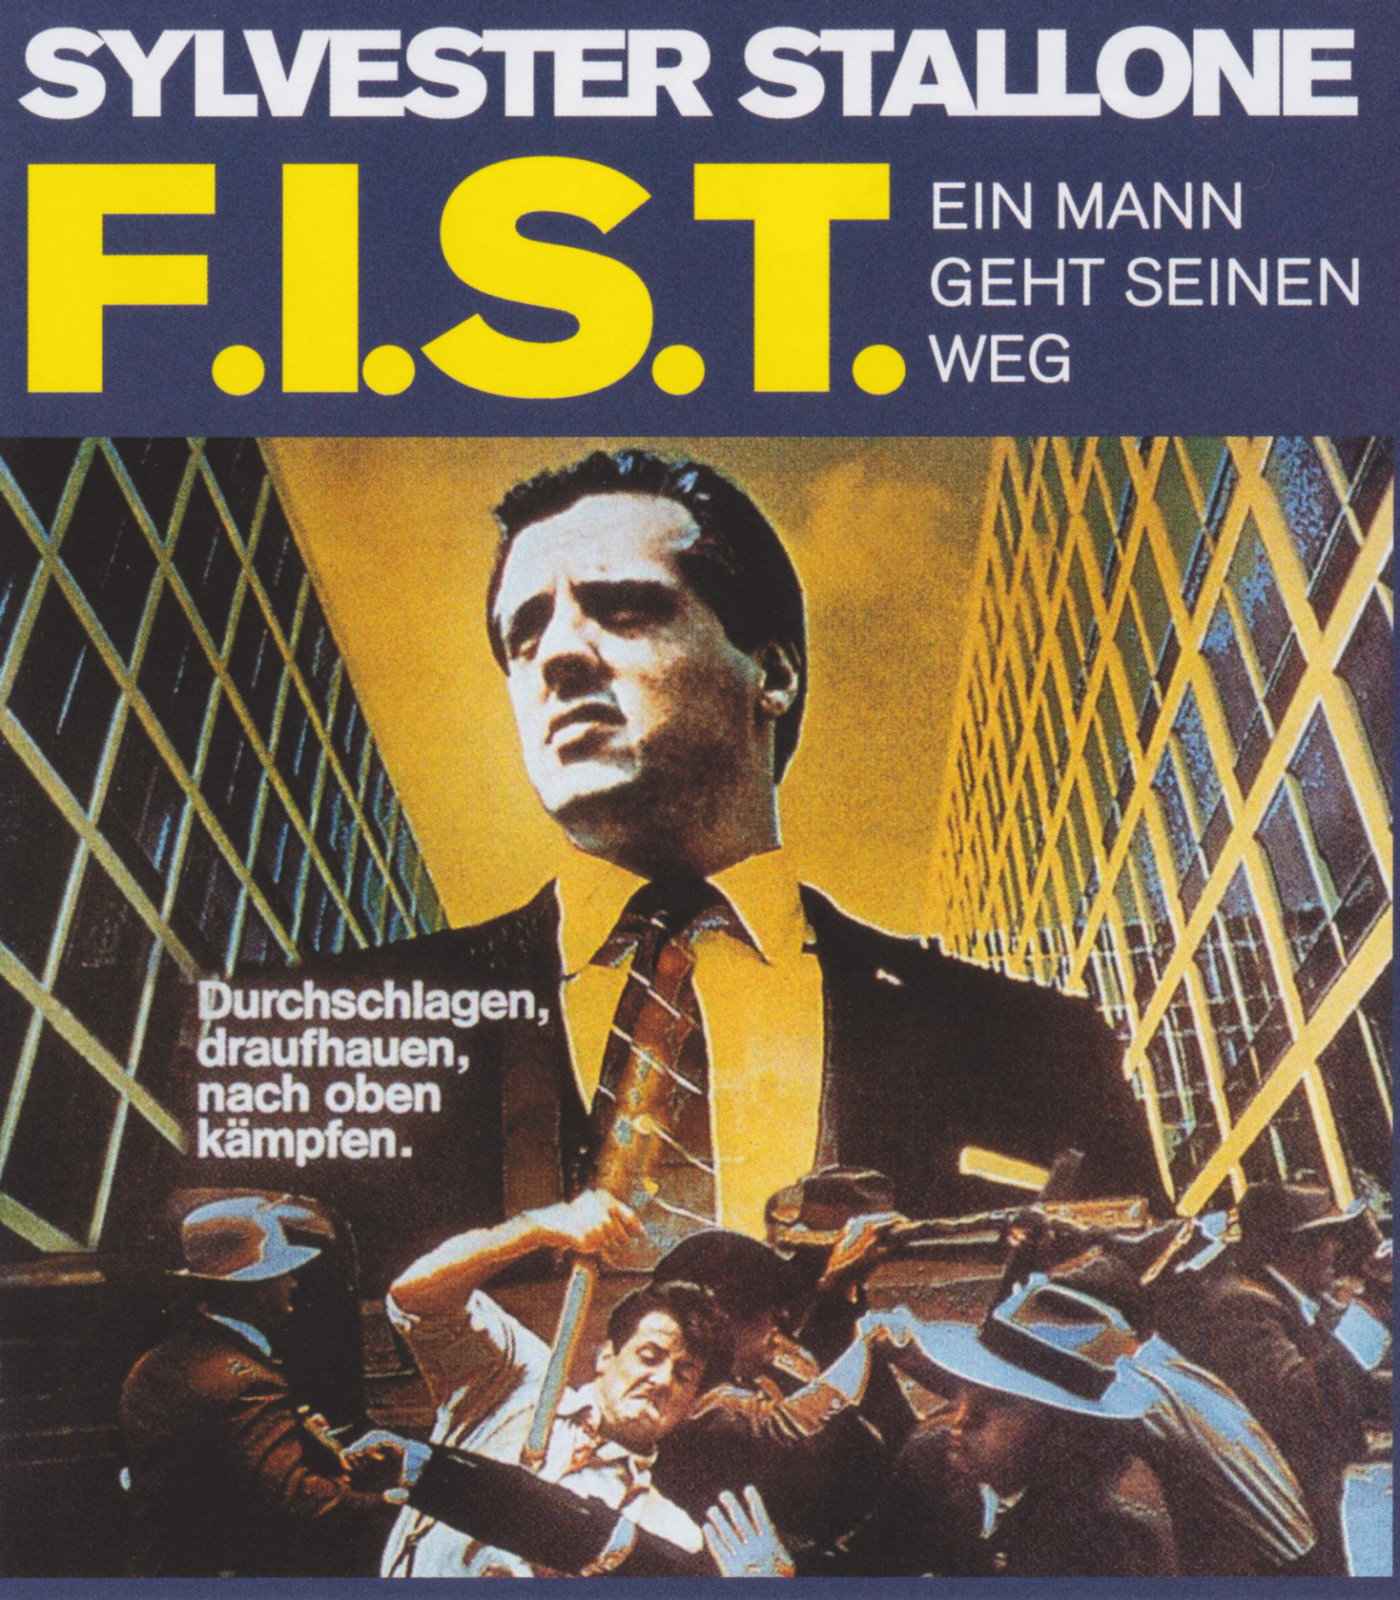 Cover - F.I.S.T. - Ein Mann geht seinen Weg.jpg